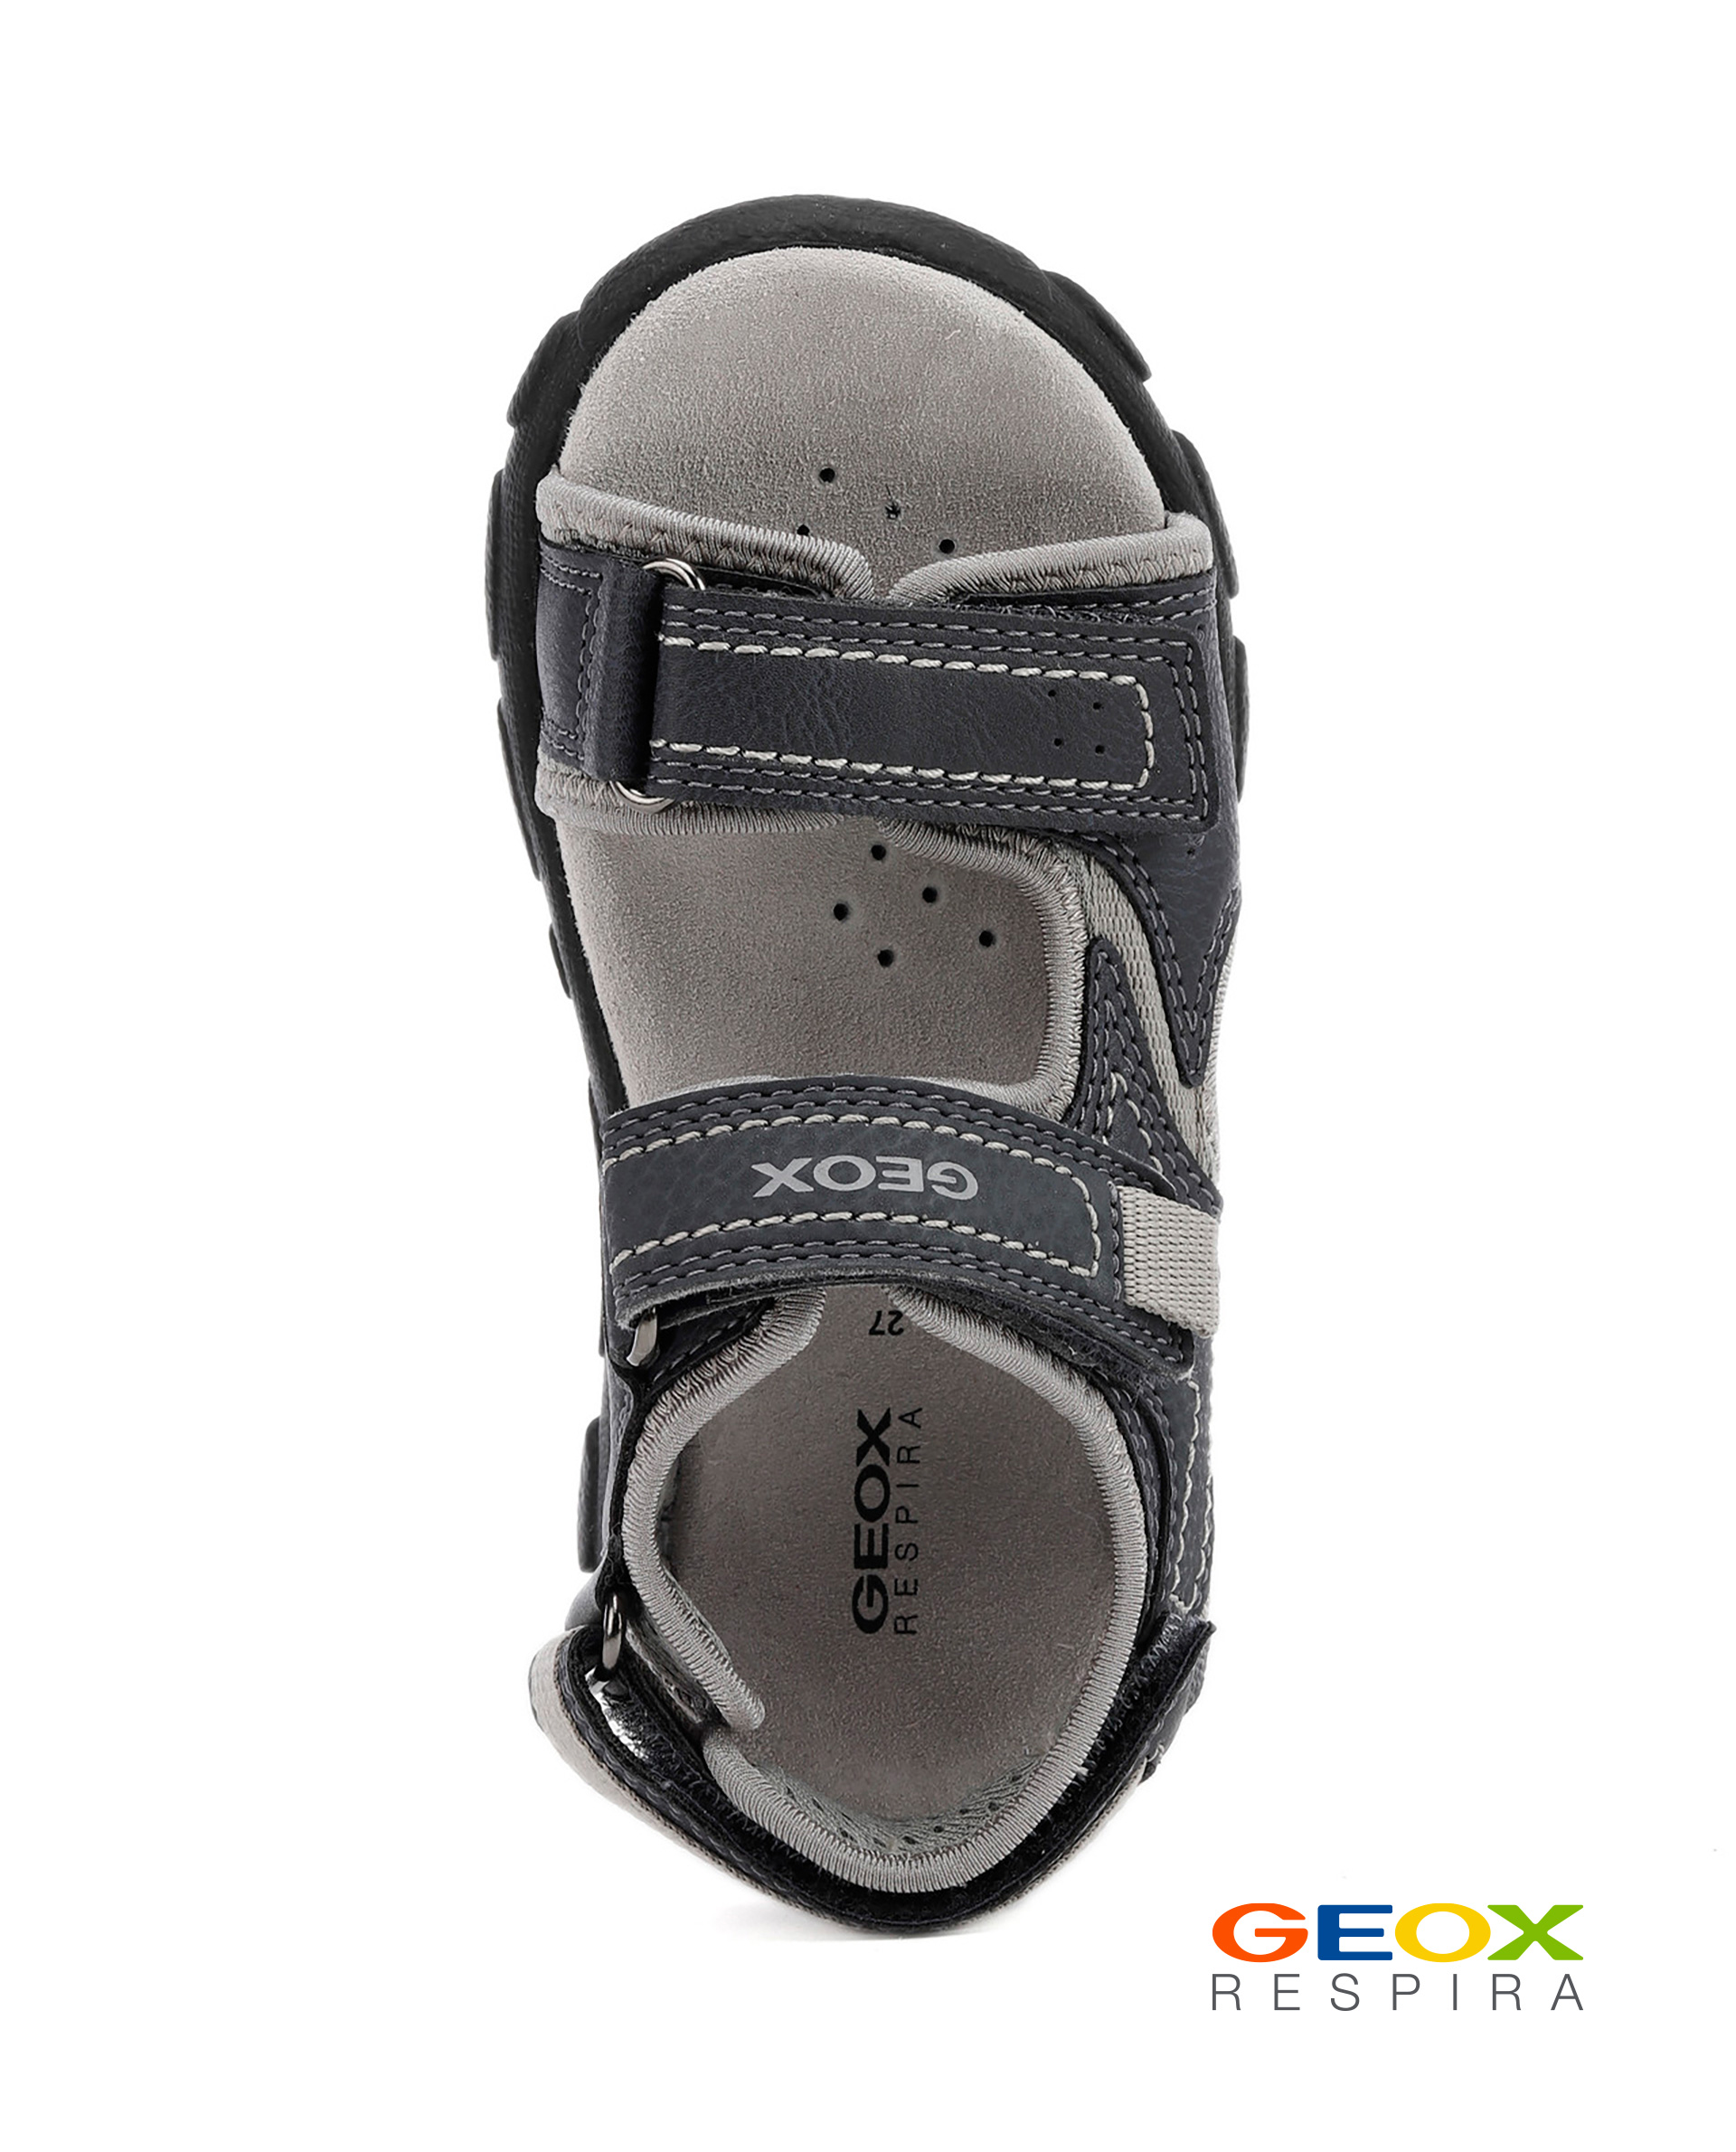 Серые сандалии Geox для мальчика J0224A0MECEC0661, размер 33, цвет серый - фото 4